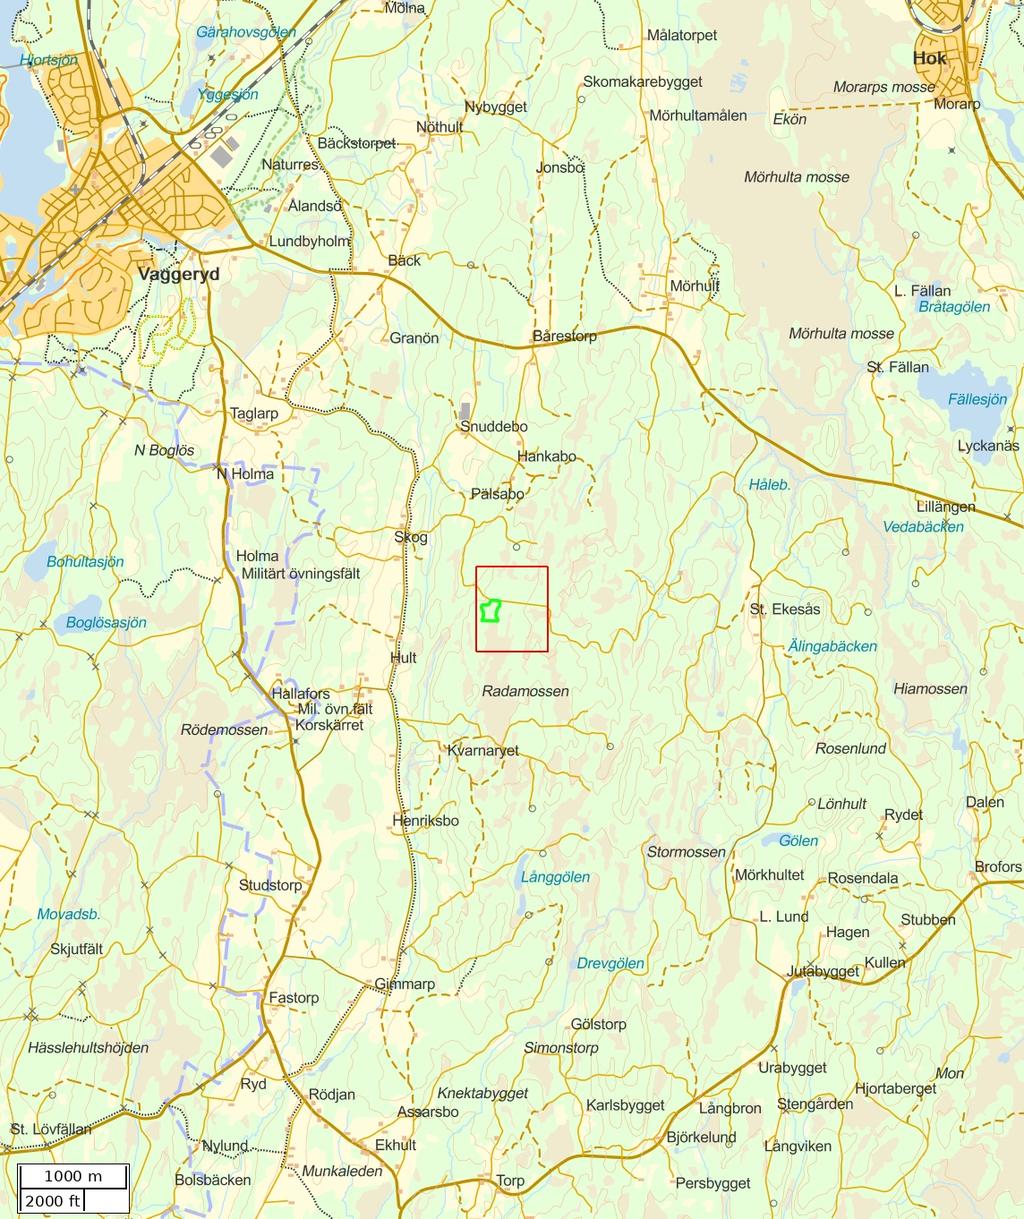 Traktdirektiv 19-01-27 17:31 Norra Hult 1:3 Hushållningssällskapet Skog Översiktskarta Skala: ~1:50000